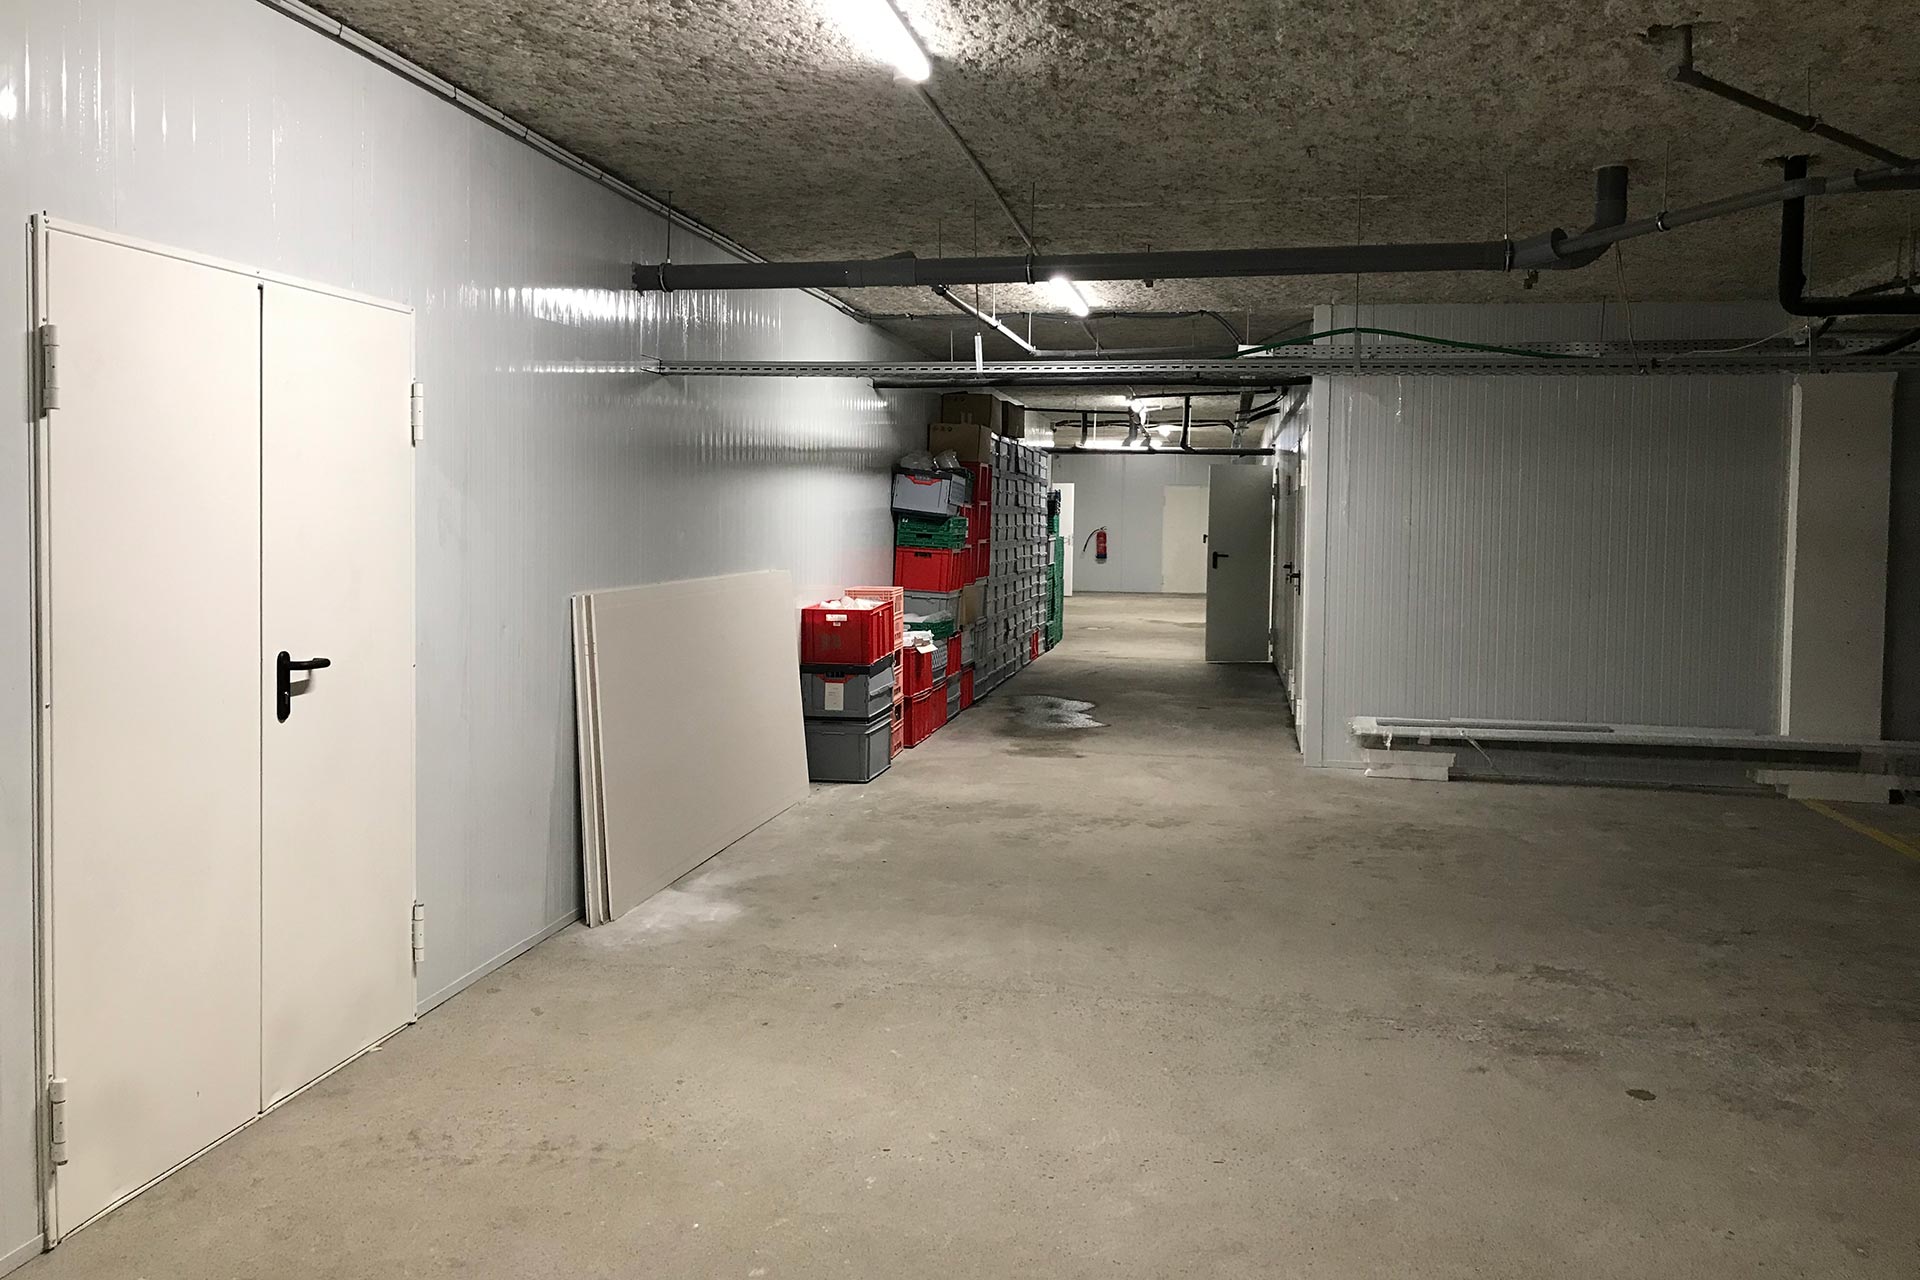 Site, en cours d’aménagement, de la ferme urbaine souterraine Cycloponics installée dans un parking du quartier Langlet-Santy, dans le 8e arrondissement de Lyon